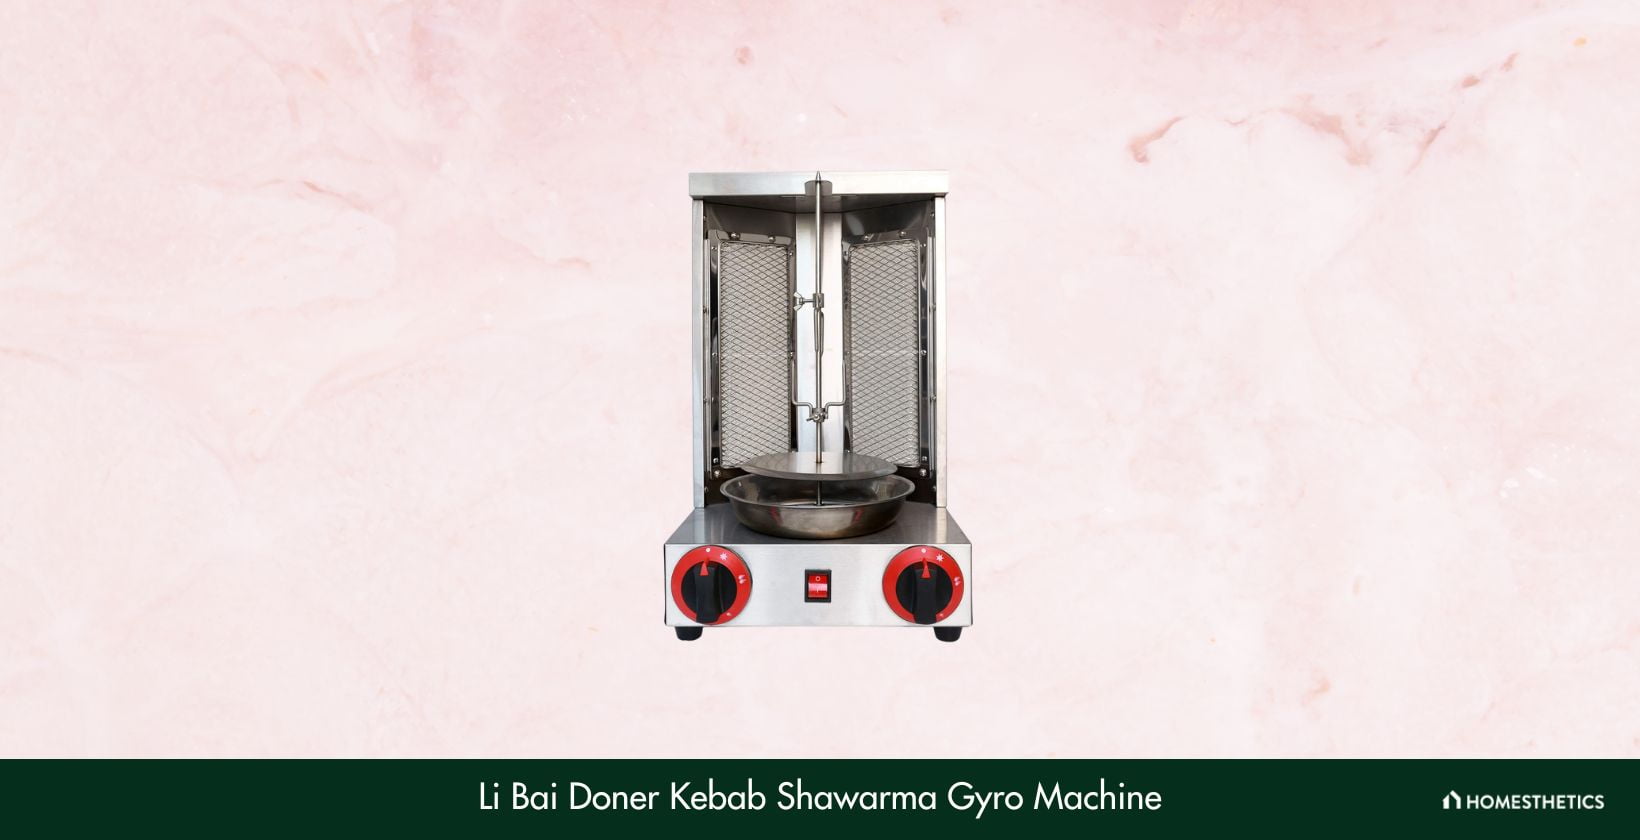 Li Bai Doner Kebab Shawarma Gyro Machine